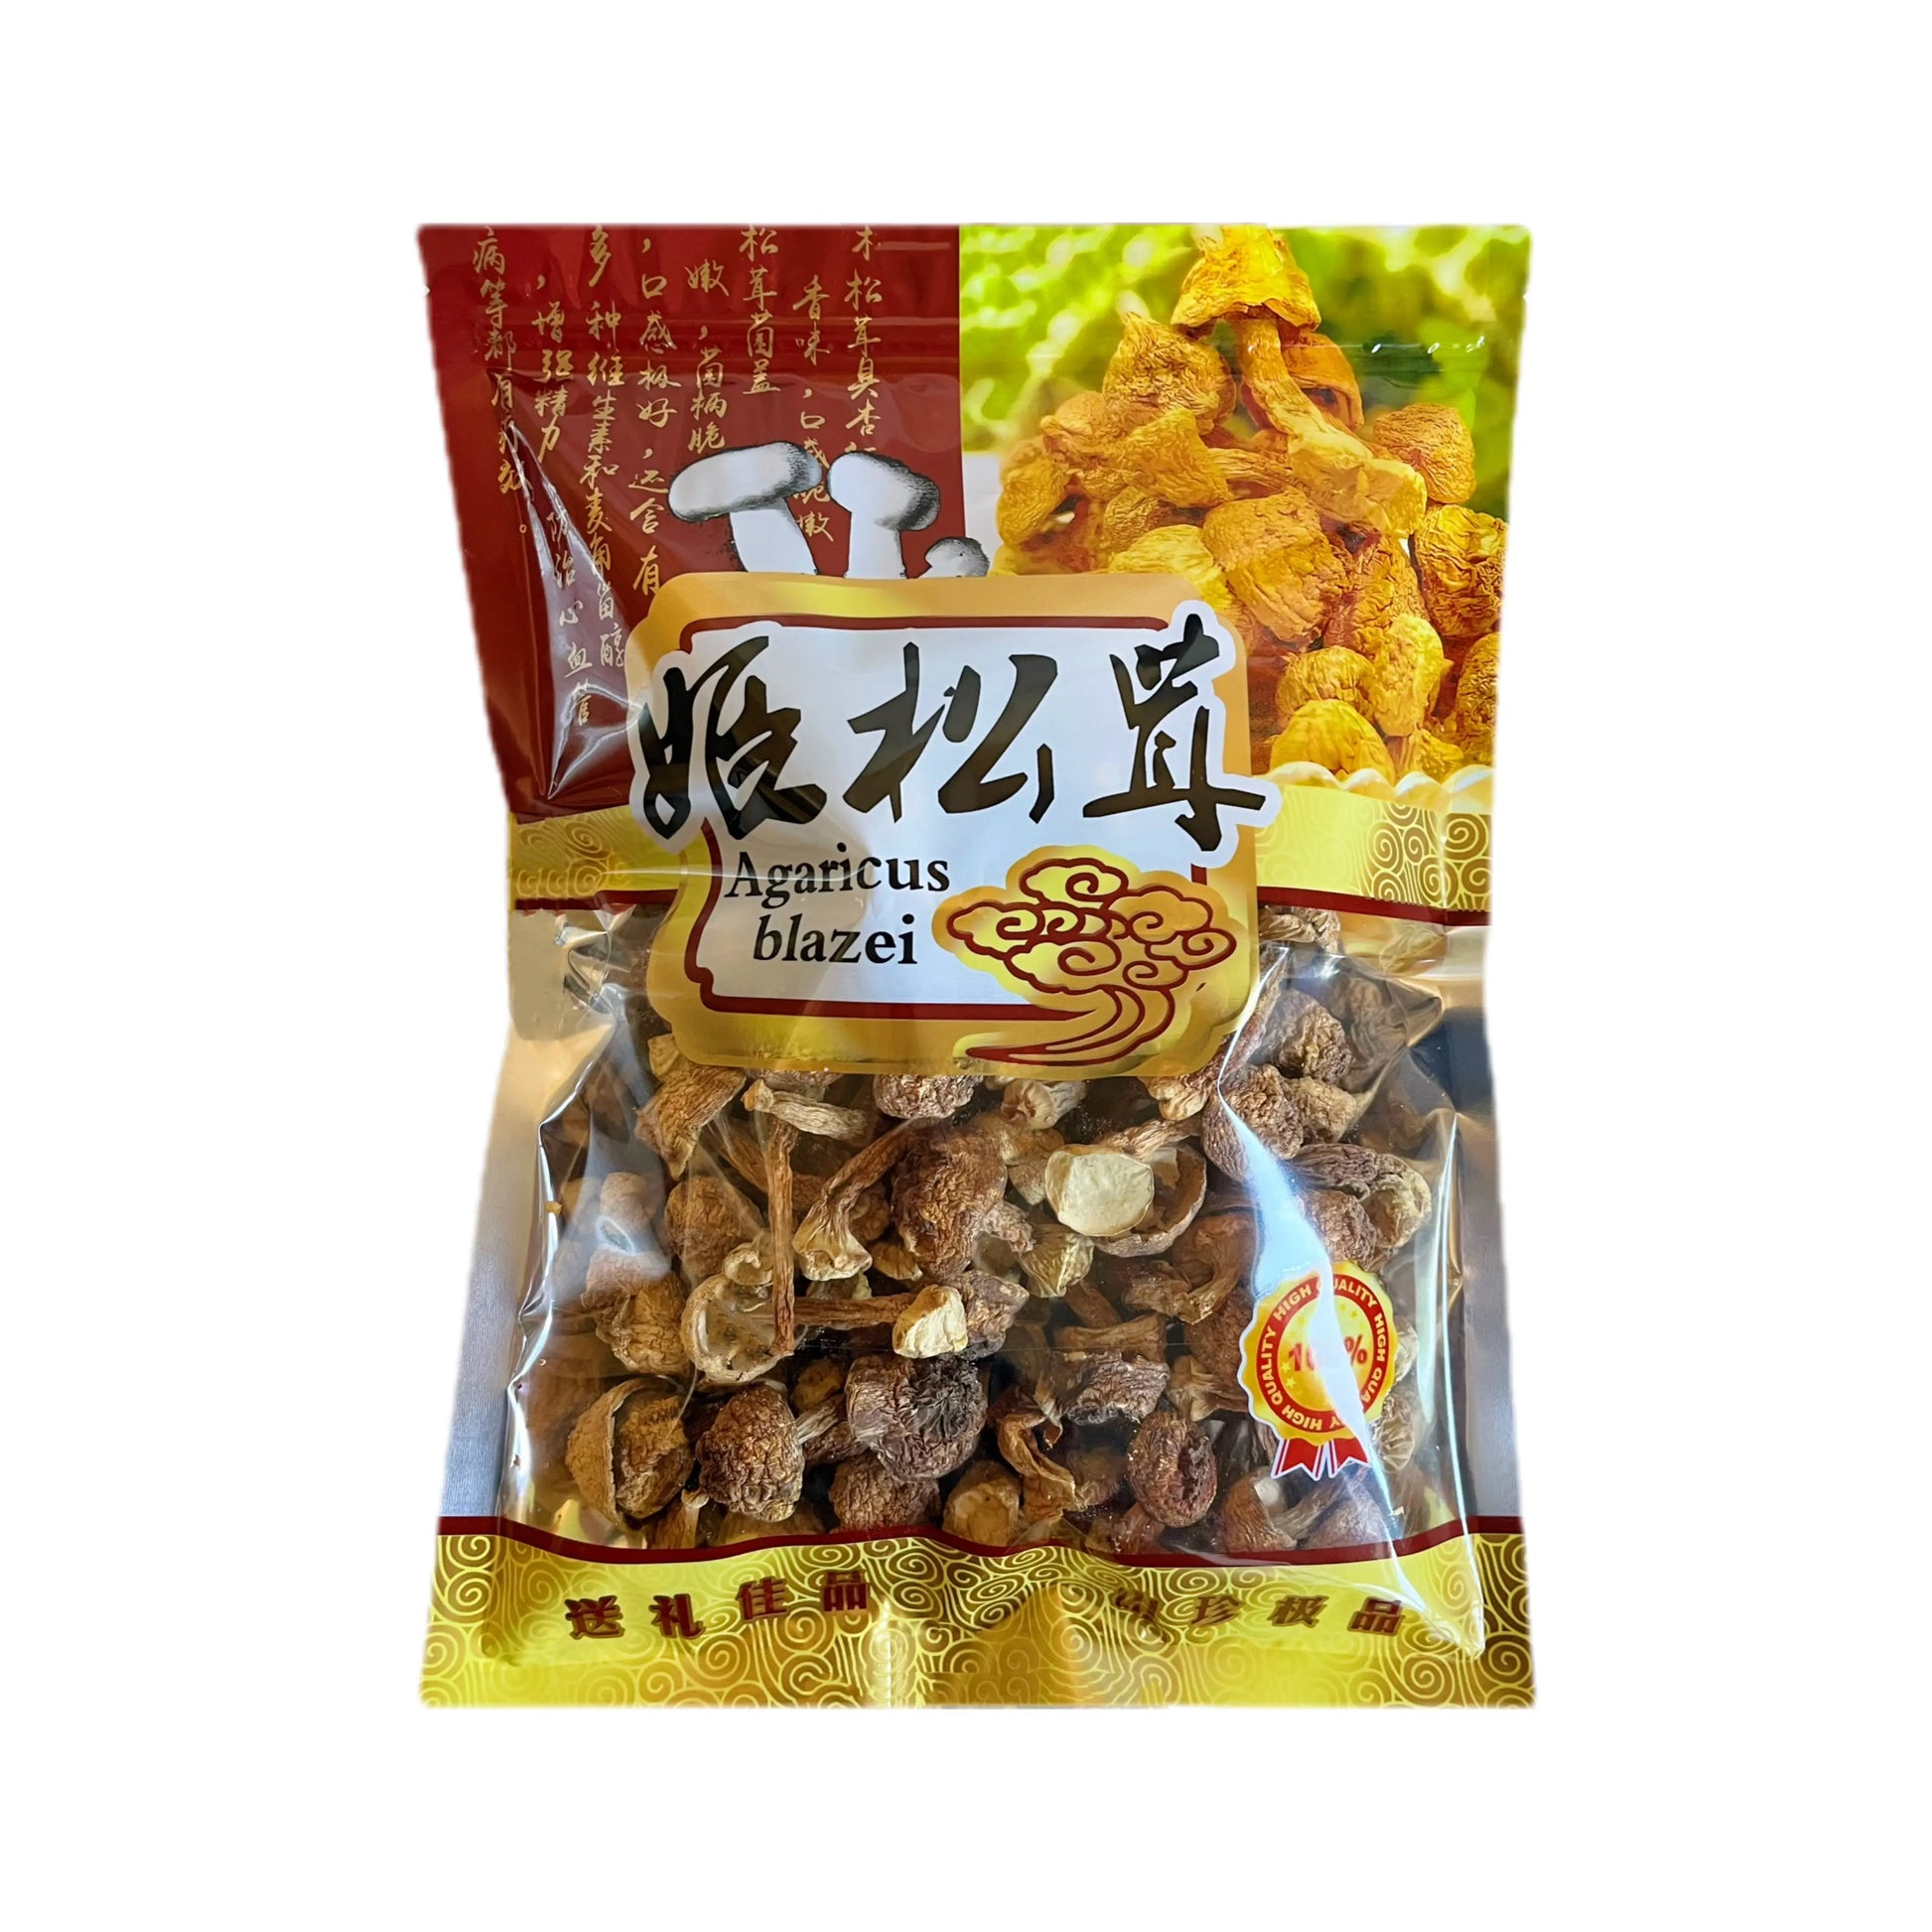 原色乡村特产姬松茸干货食用菌菇煲汤材料250克 浙江品菌食品有限公司